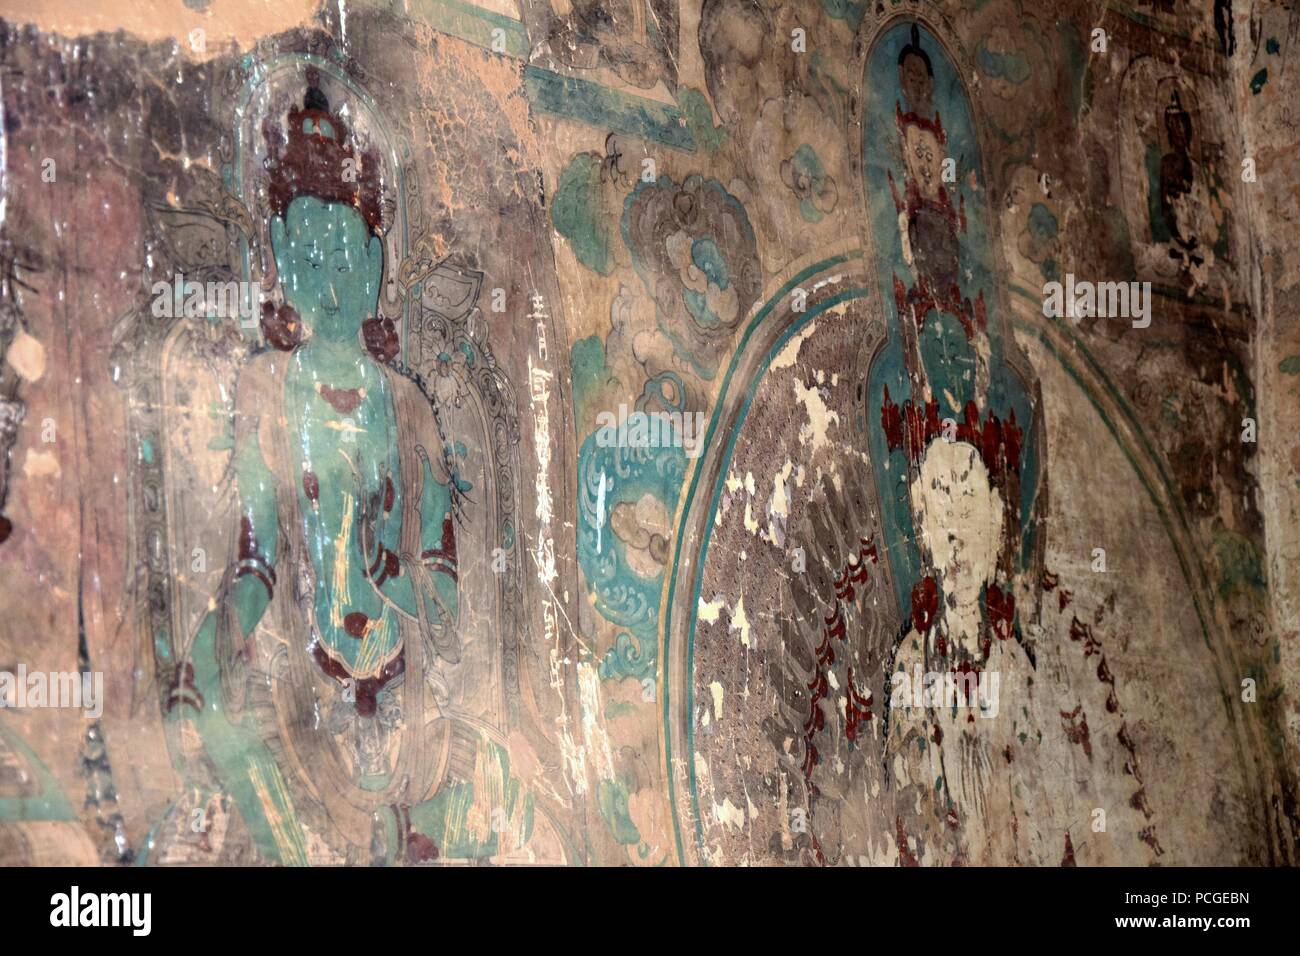 LANZHOU, province de Gansu, CHINE - CIRCA MAI 2017 : peintures murales à Bingling temple grotte (site du patrimoine mondial de l'UNESCO). Banque D'Images